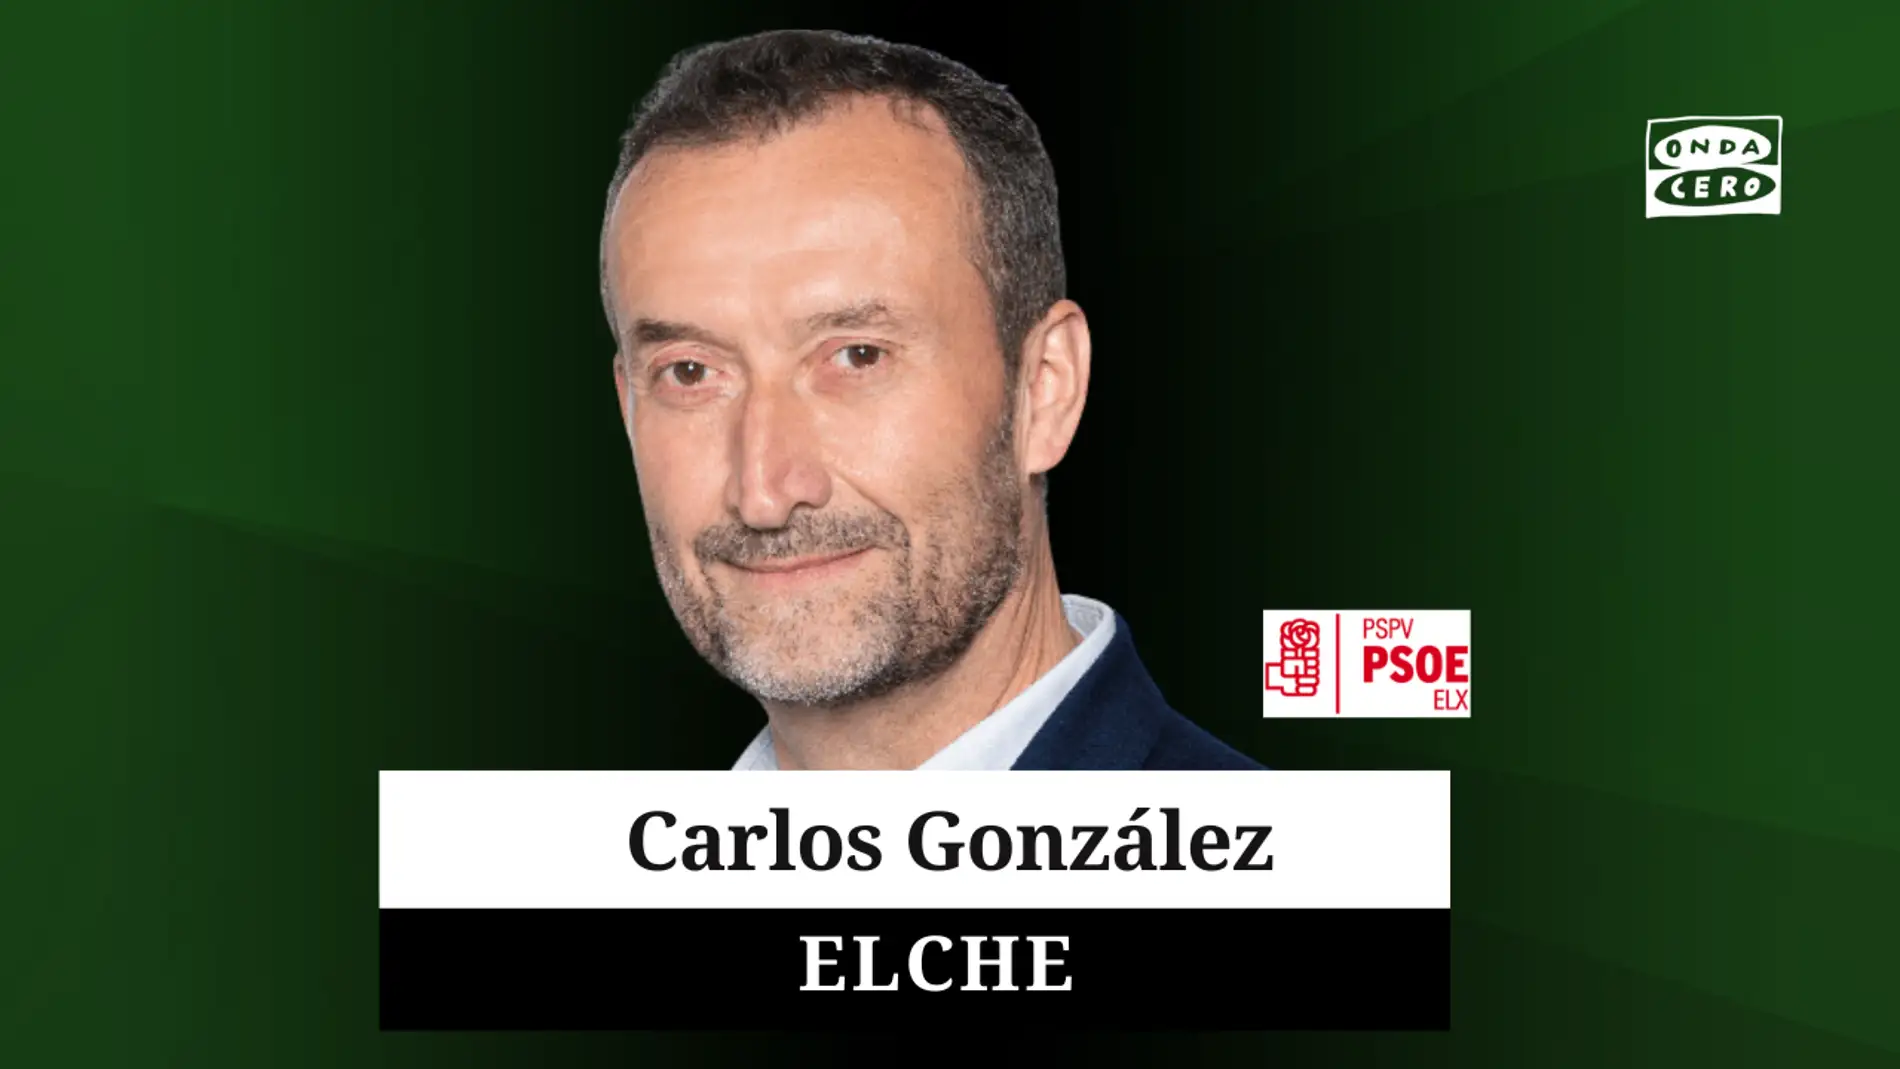 Carlos González, un objetivo: lograr la Alcaldía de Elche para el PSOE por tercer mandato consecutivo